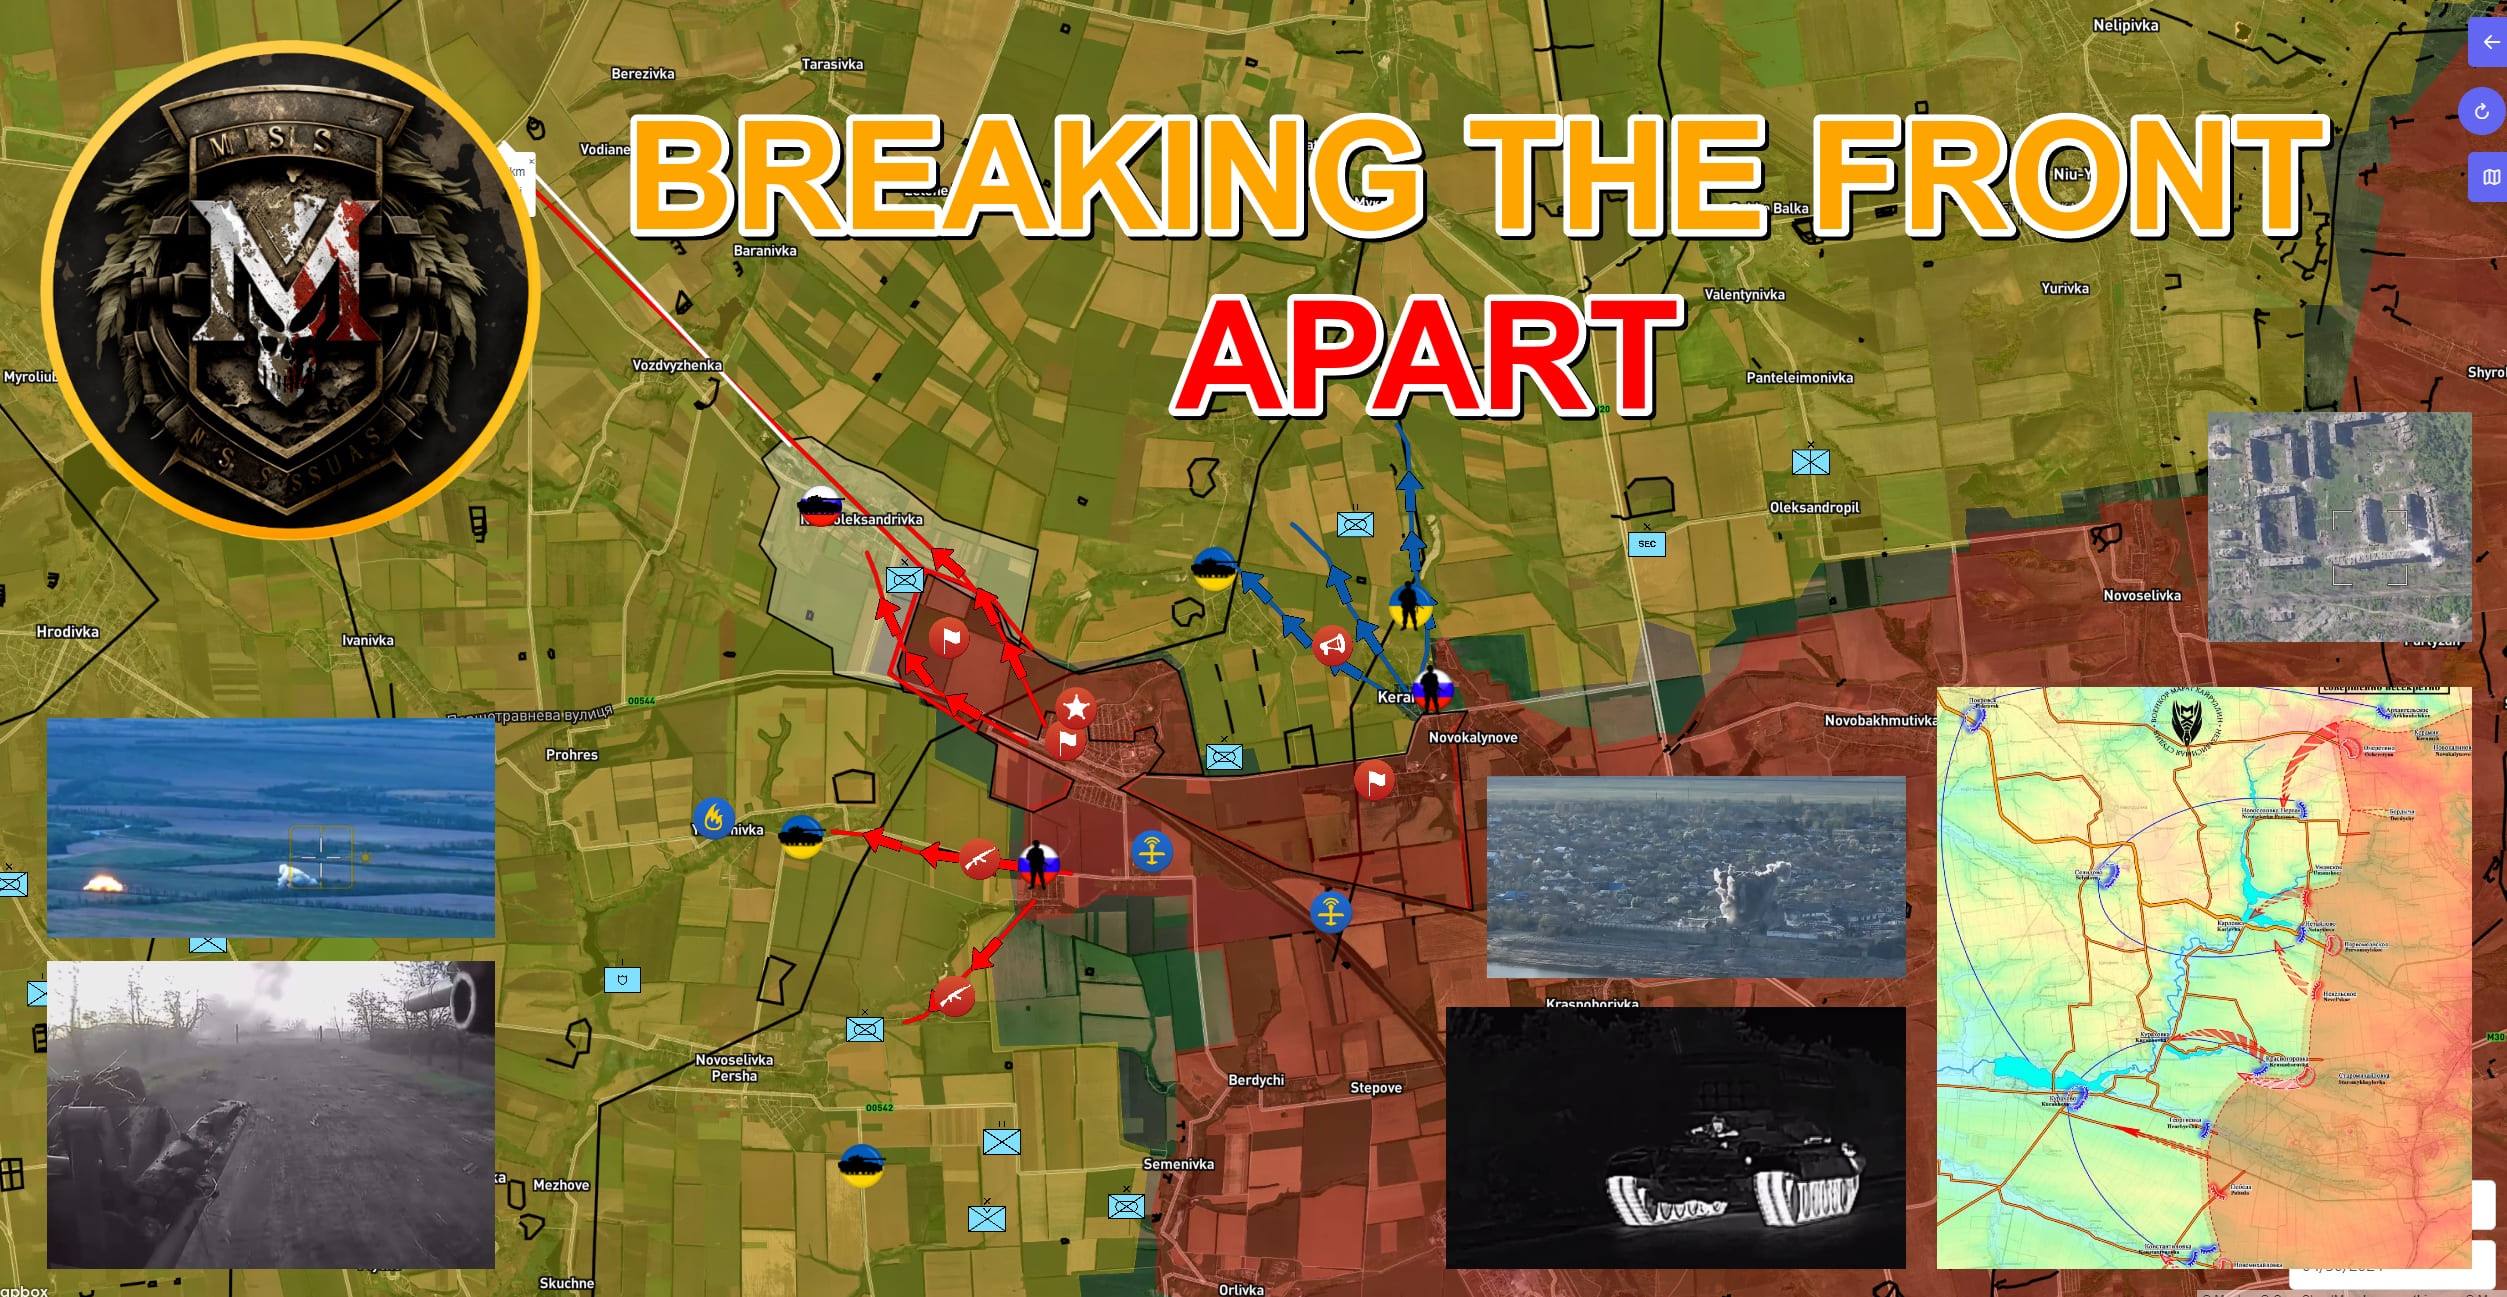 View - Chiến sự Ukraine 1/5: Kiev vỡ trận, Nga tấn công mạnh ở Avdiivka | Báo Dân trí